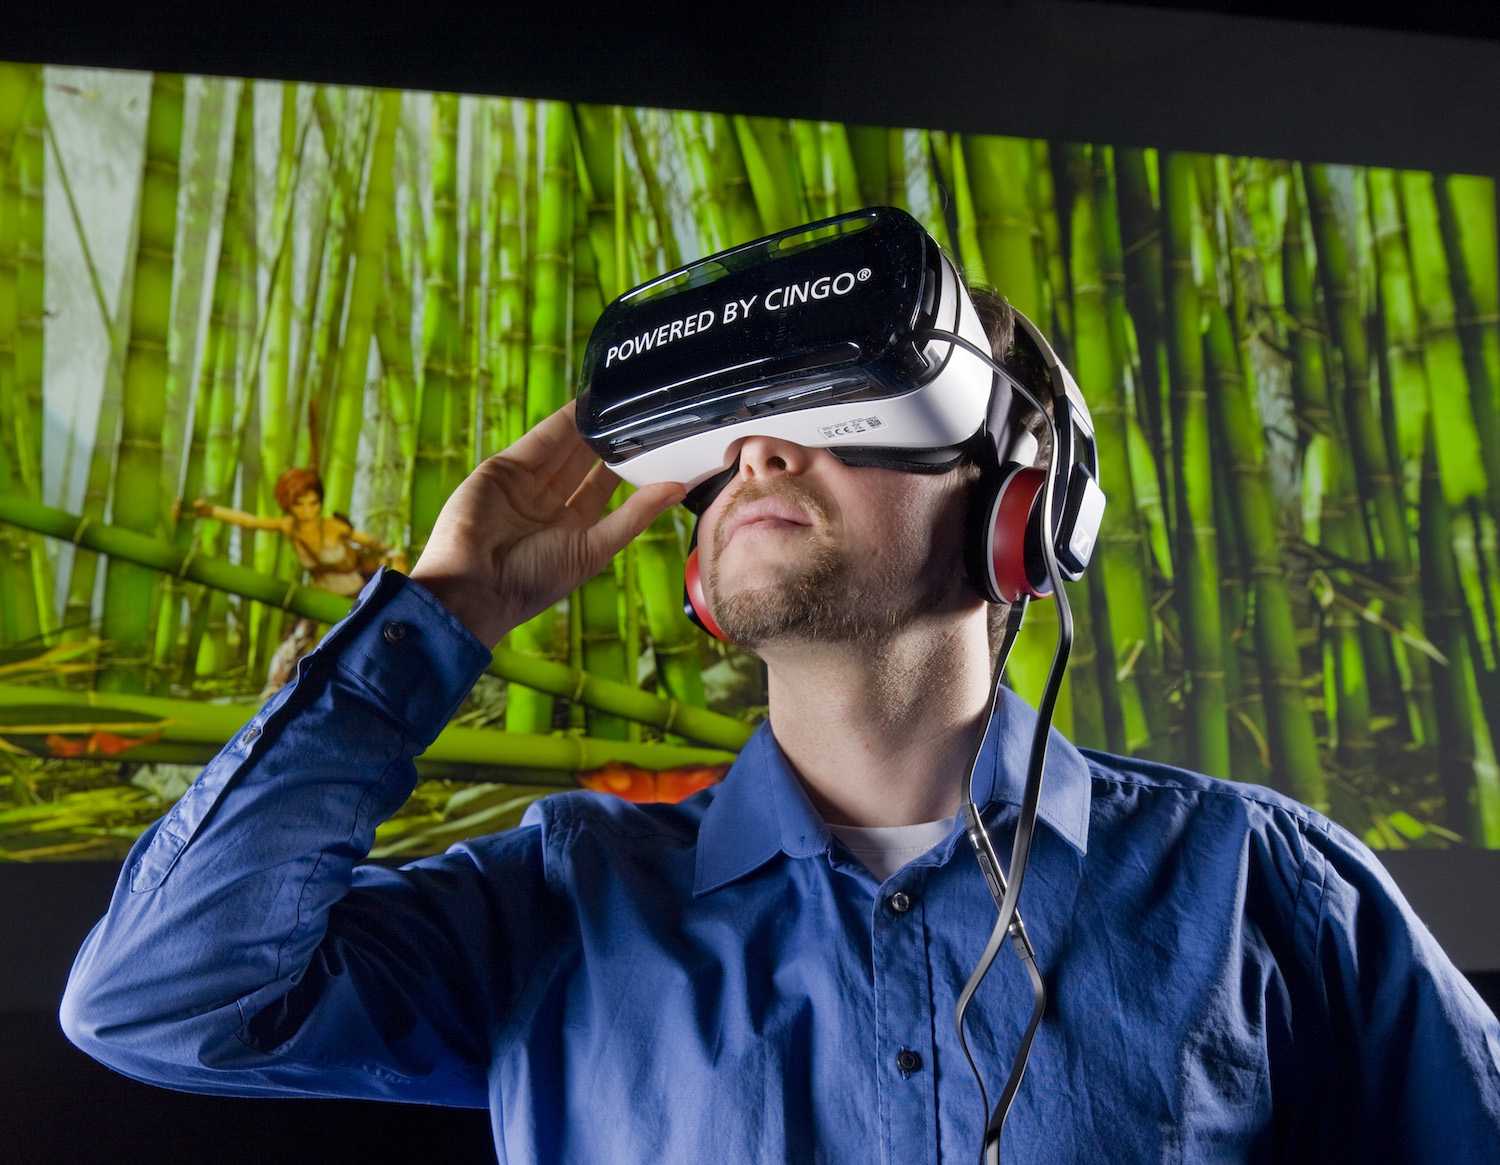 Жанры vr. VR виртуальная реальность. Виртуальная реальность без погружения. Человек в виртуальной реальности. Очки виртуальной реальности на человеке.